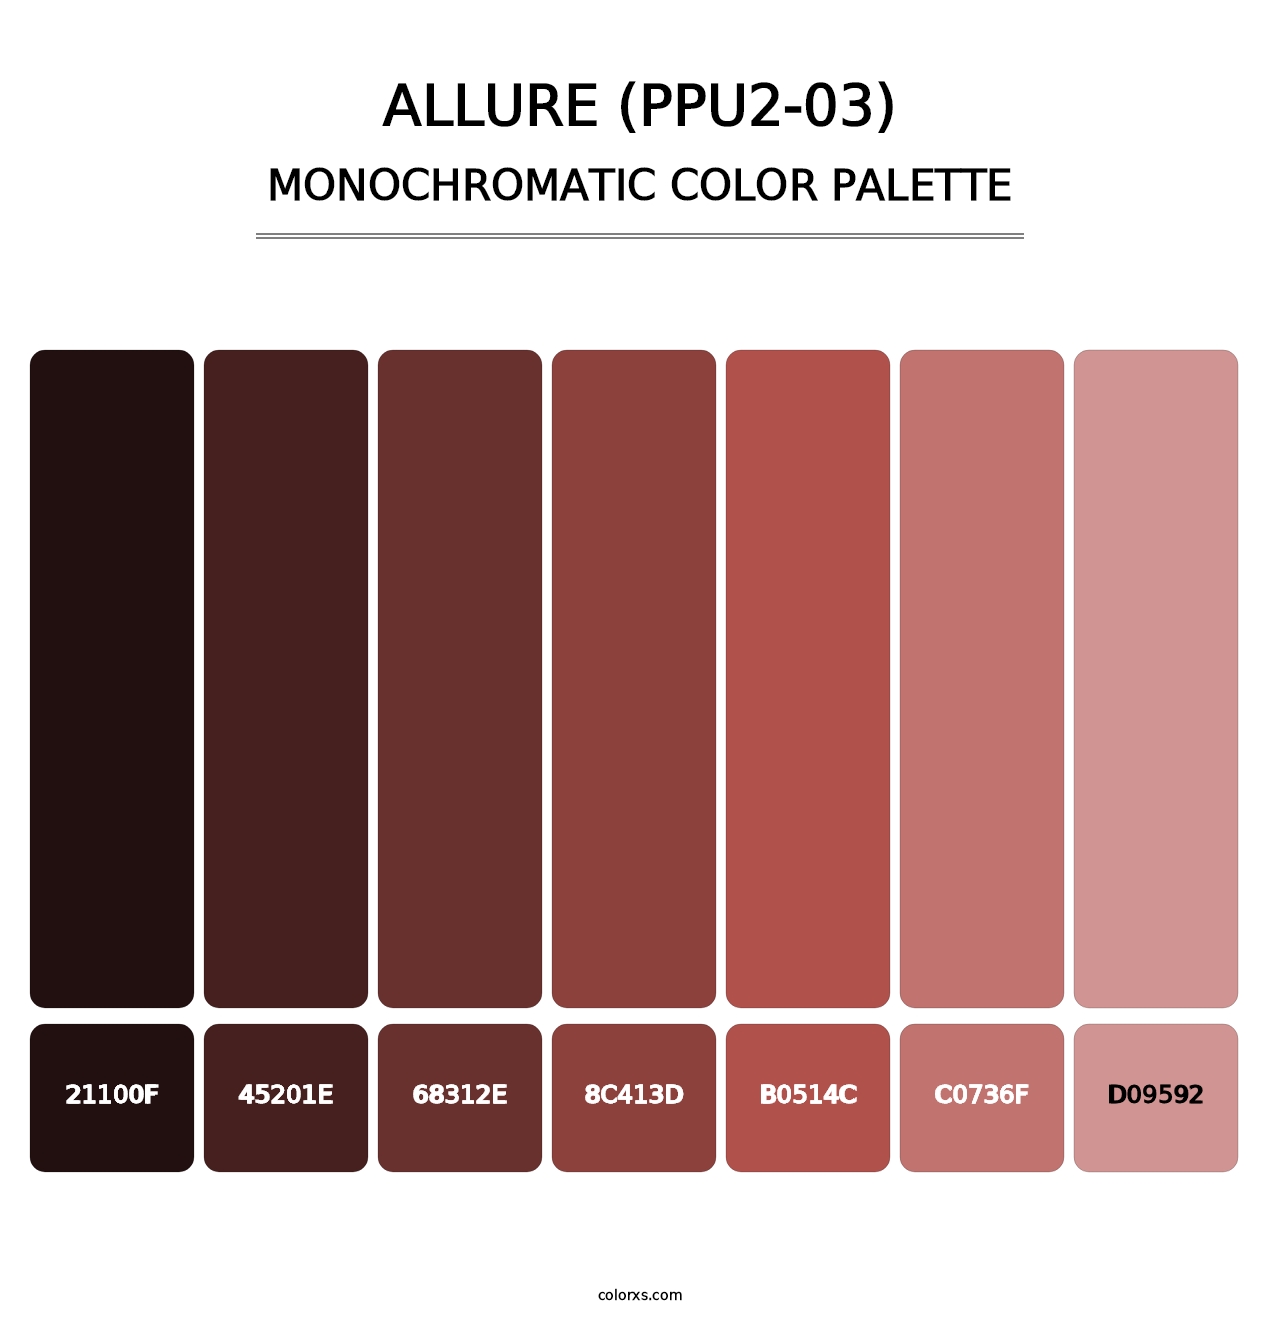 Allure (PPU2-03) - Monochromatic Color Palette